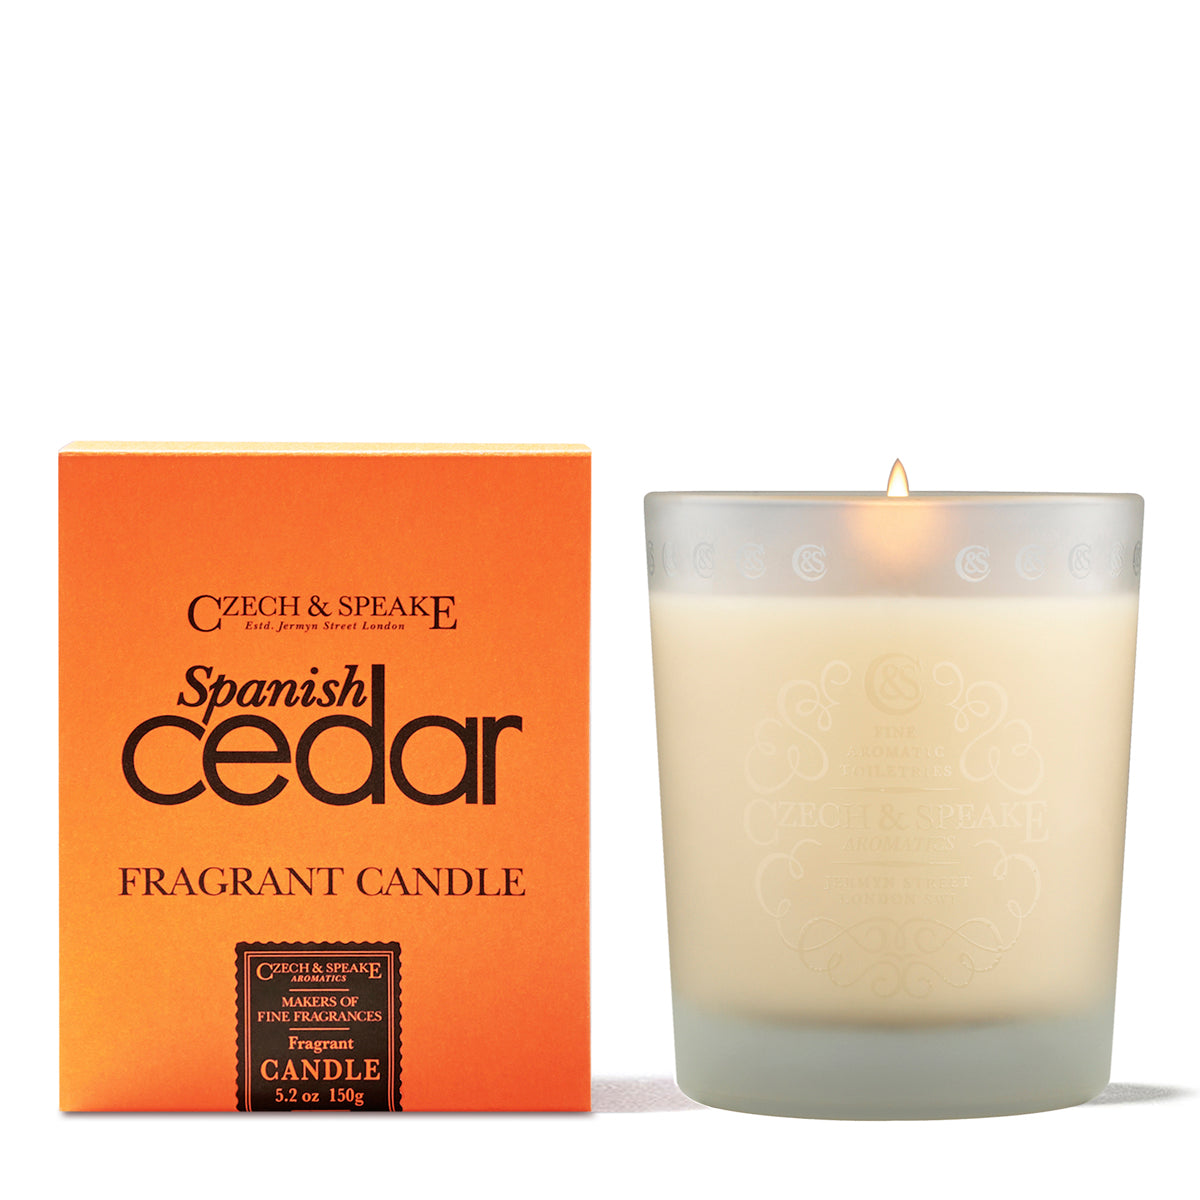 Spanish Cedar Candle - Czech & Speake 